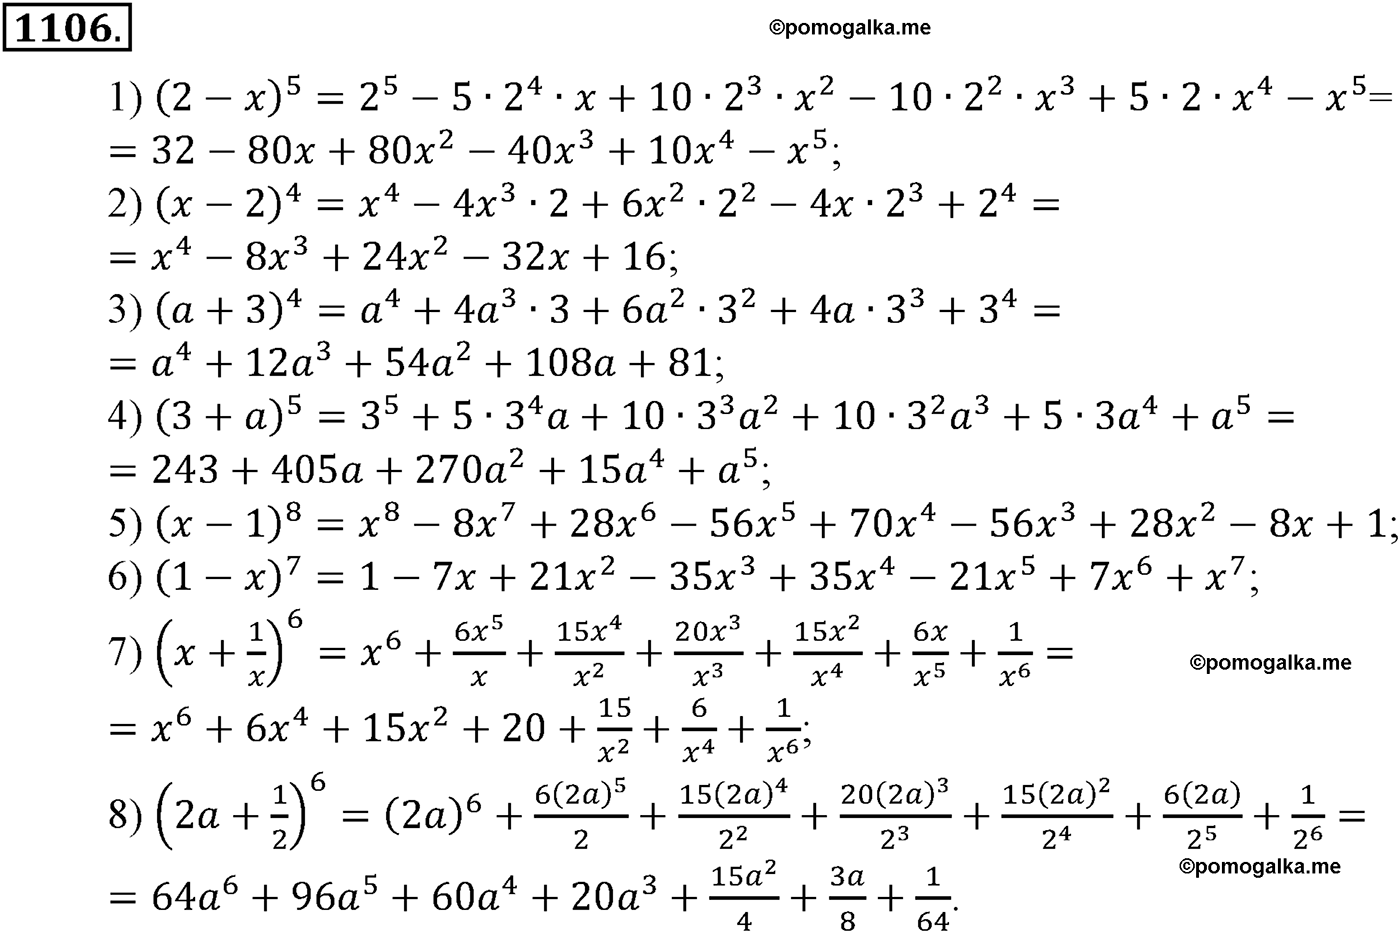 разбор задачи №1106 по алгебре за 10-11 класс из учебника Алимова, Колягина